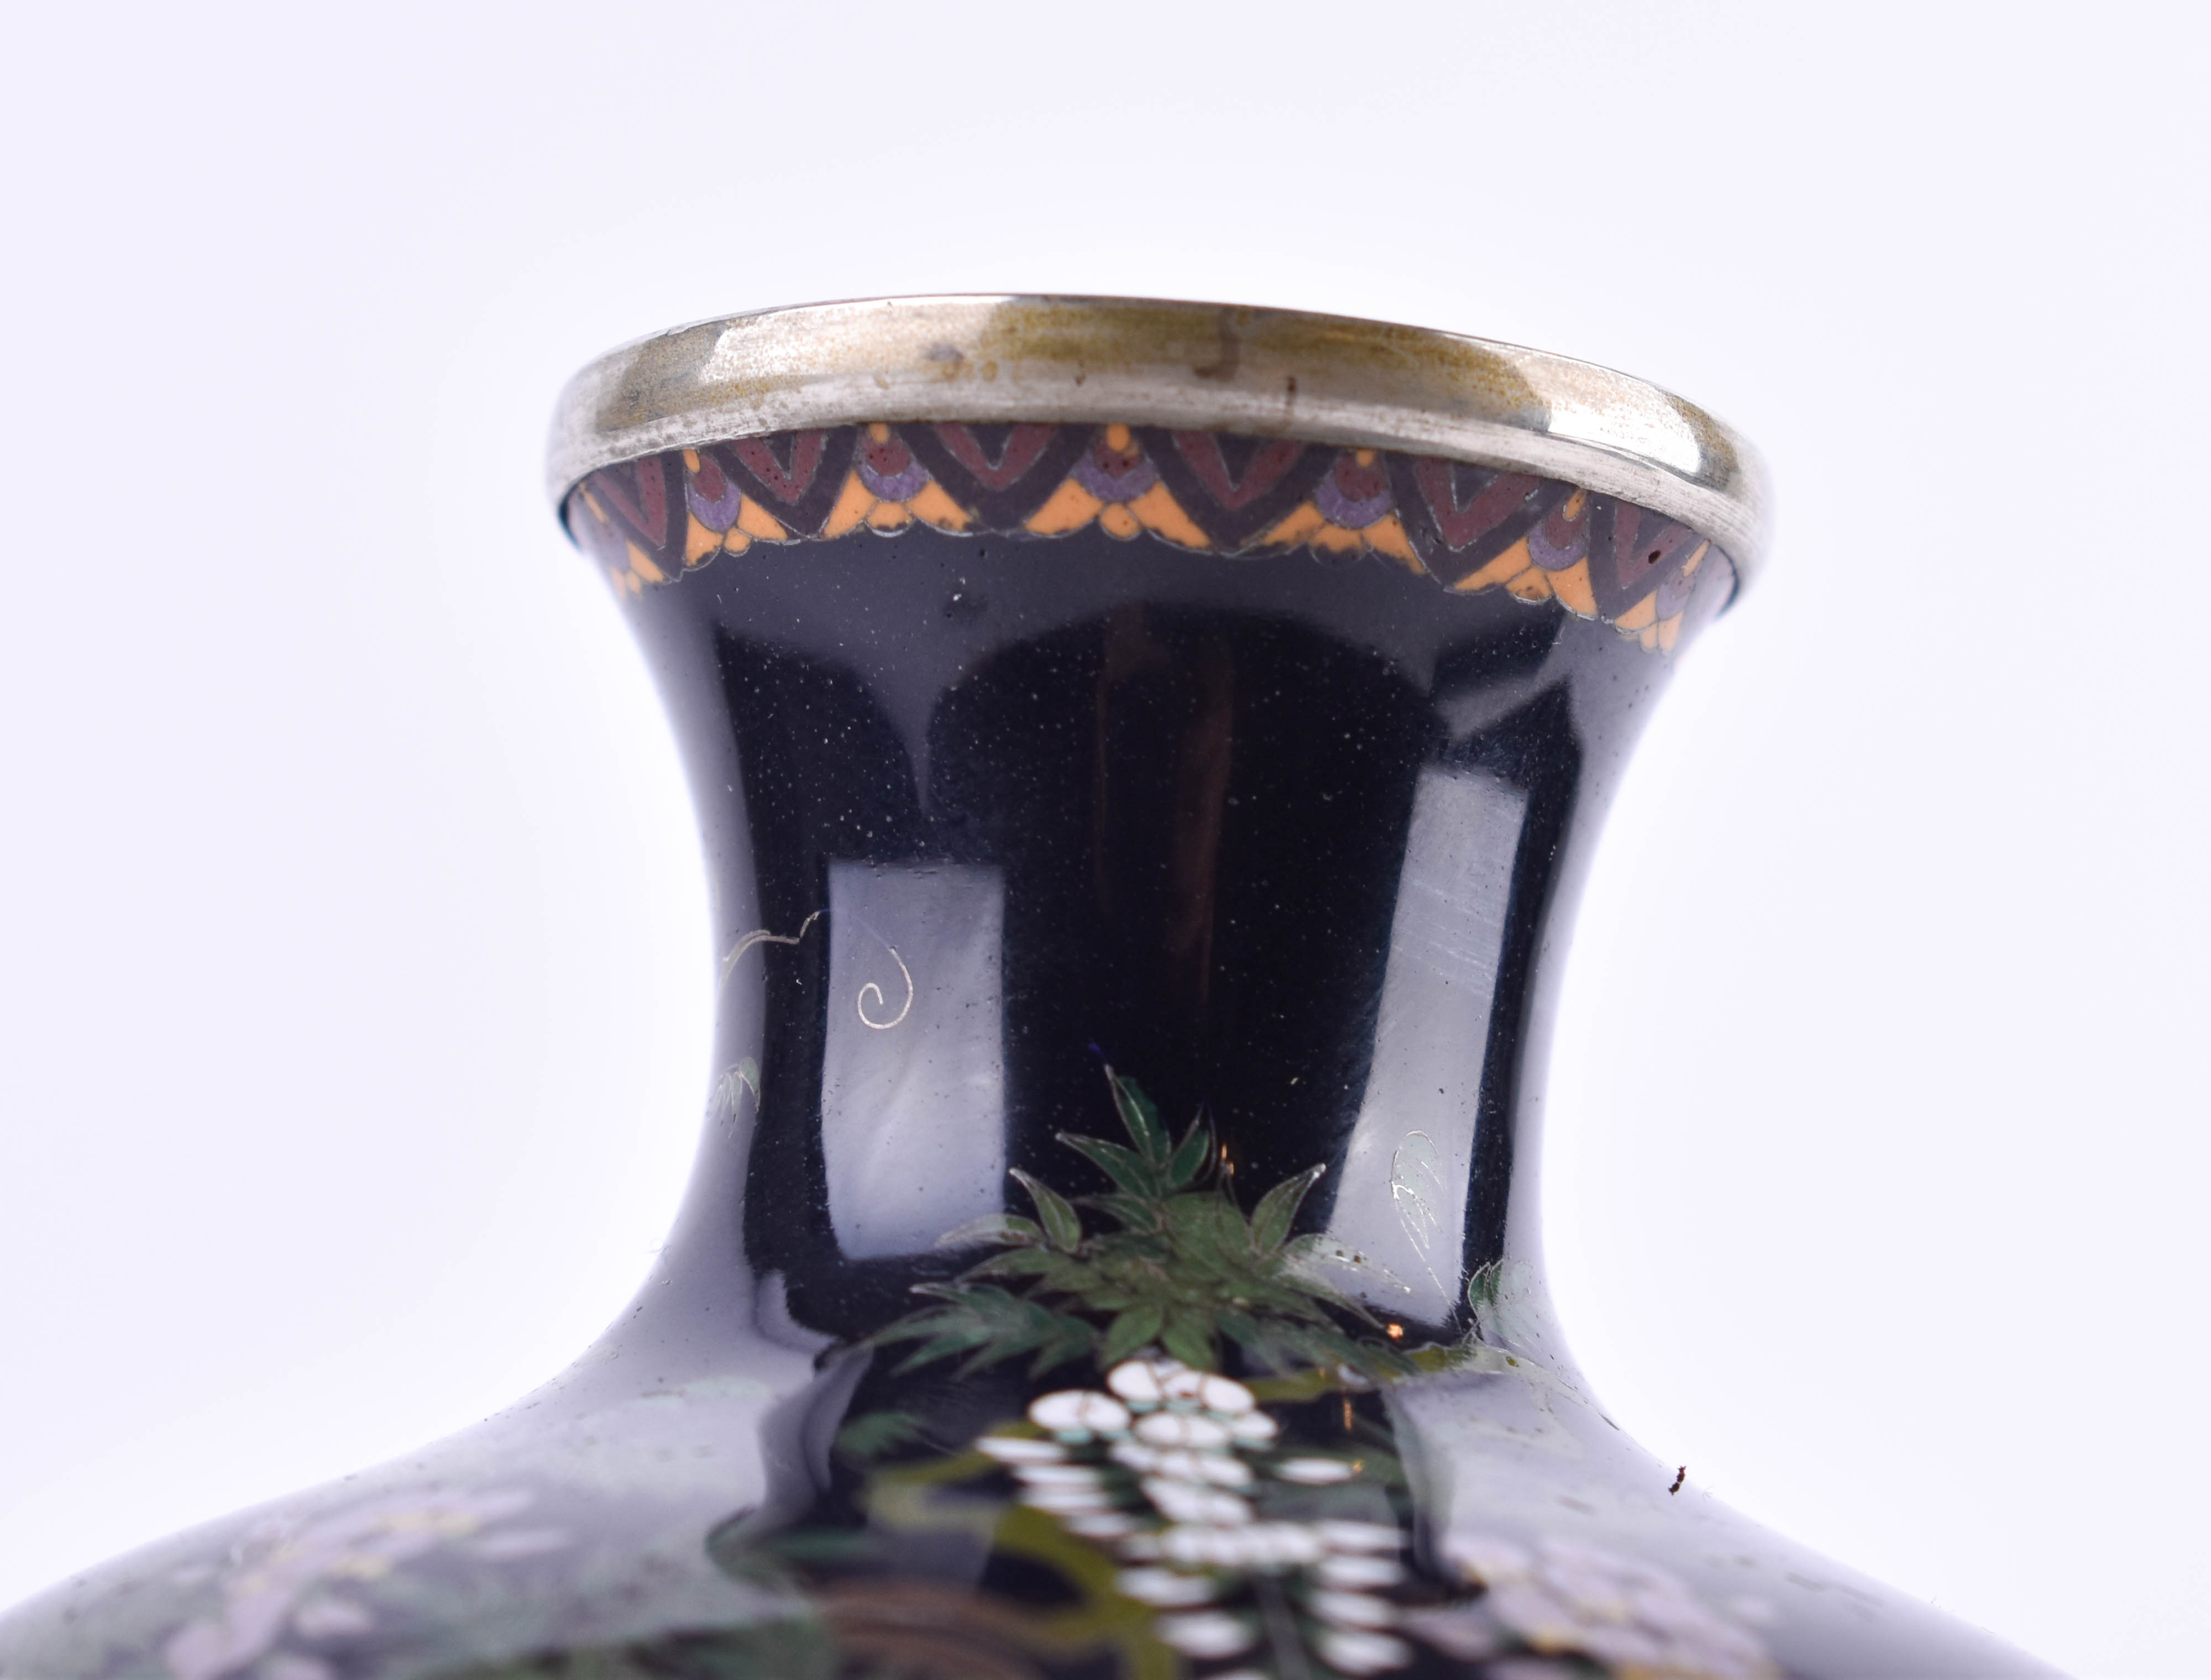  Cloisonne vase Japan Meiji period - Image 9 of 12